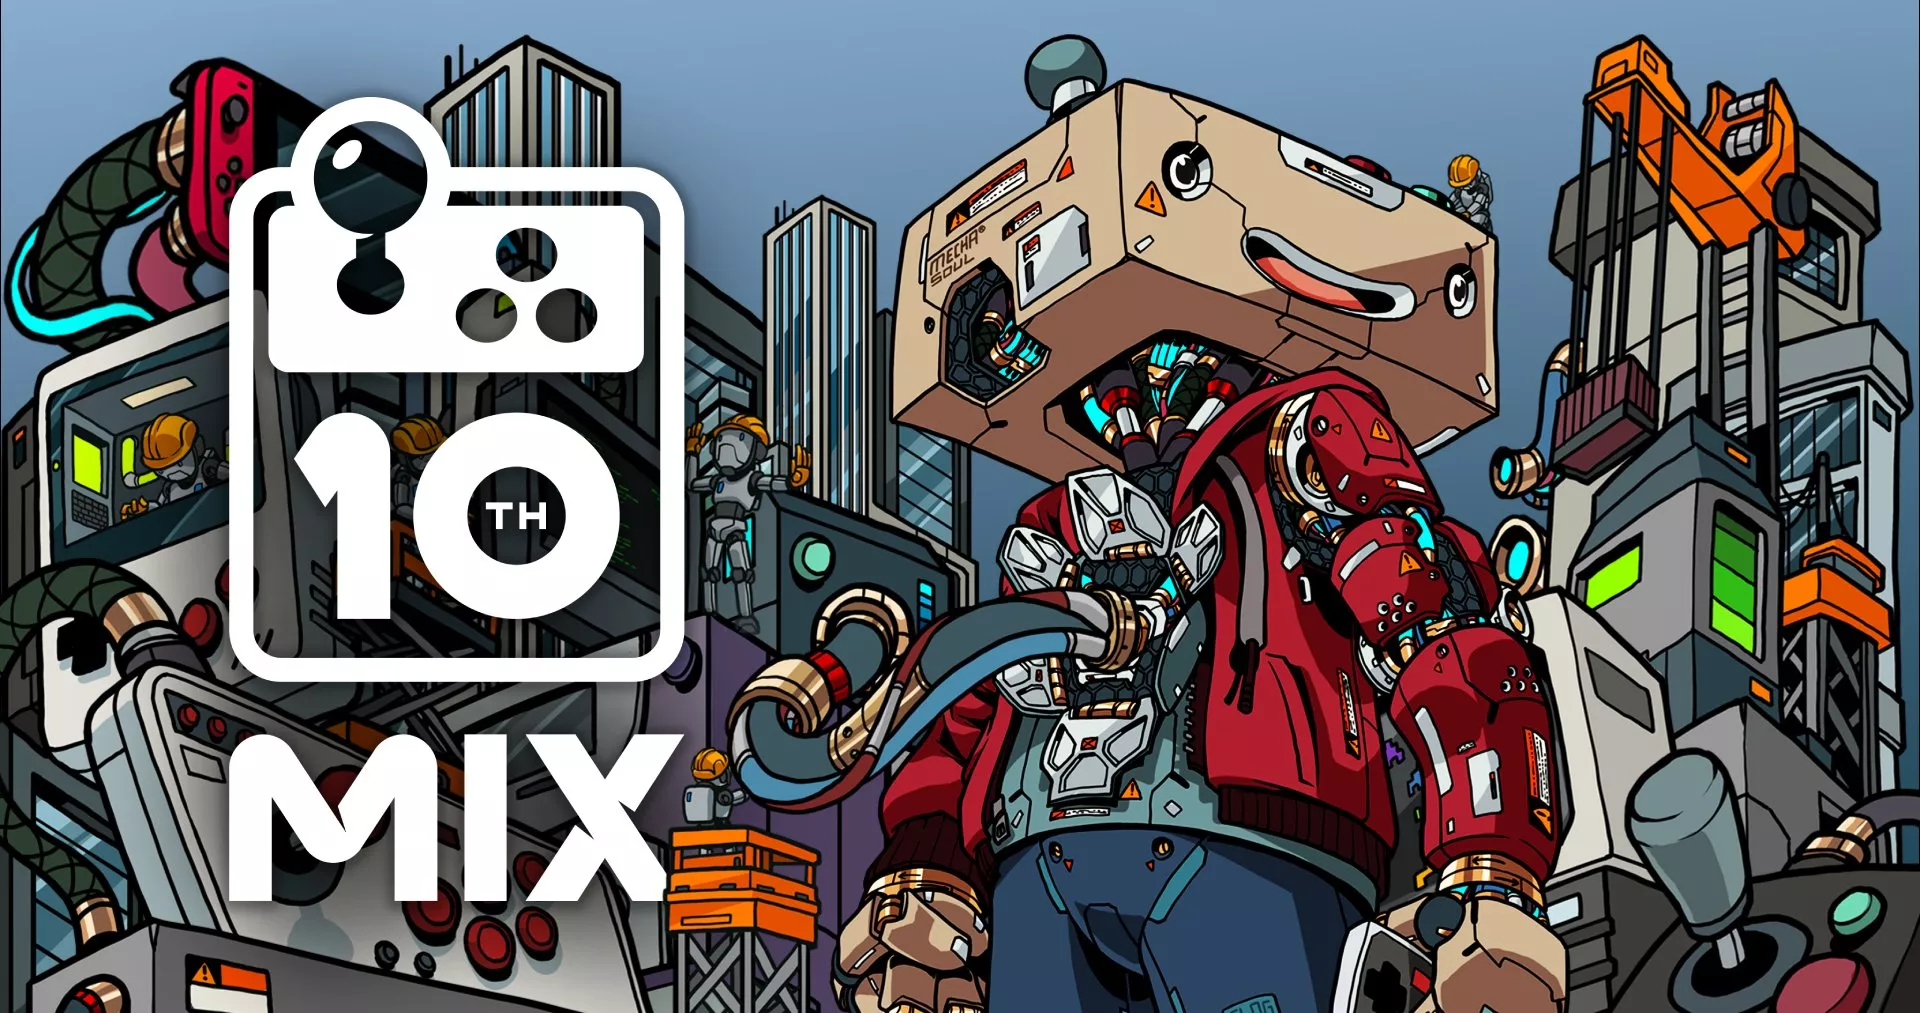 MIX 10th Anniversary Showcase: 2 Stunden Indie-Spiele ab 18 Uhr Heropic